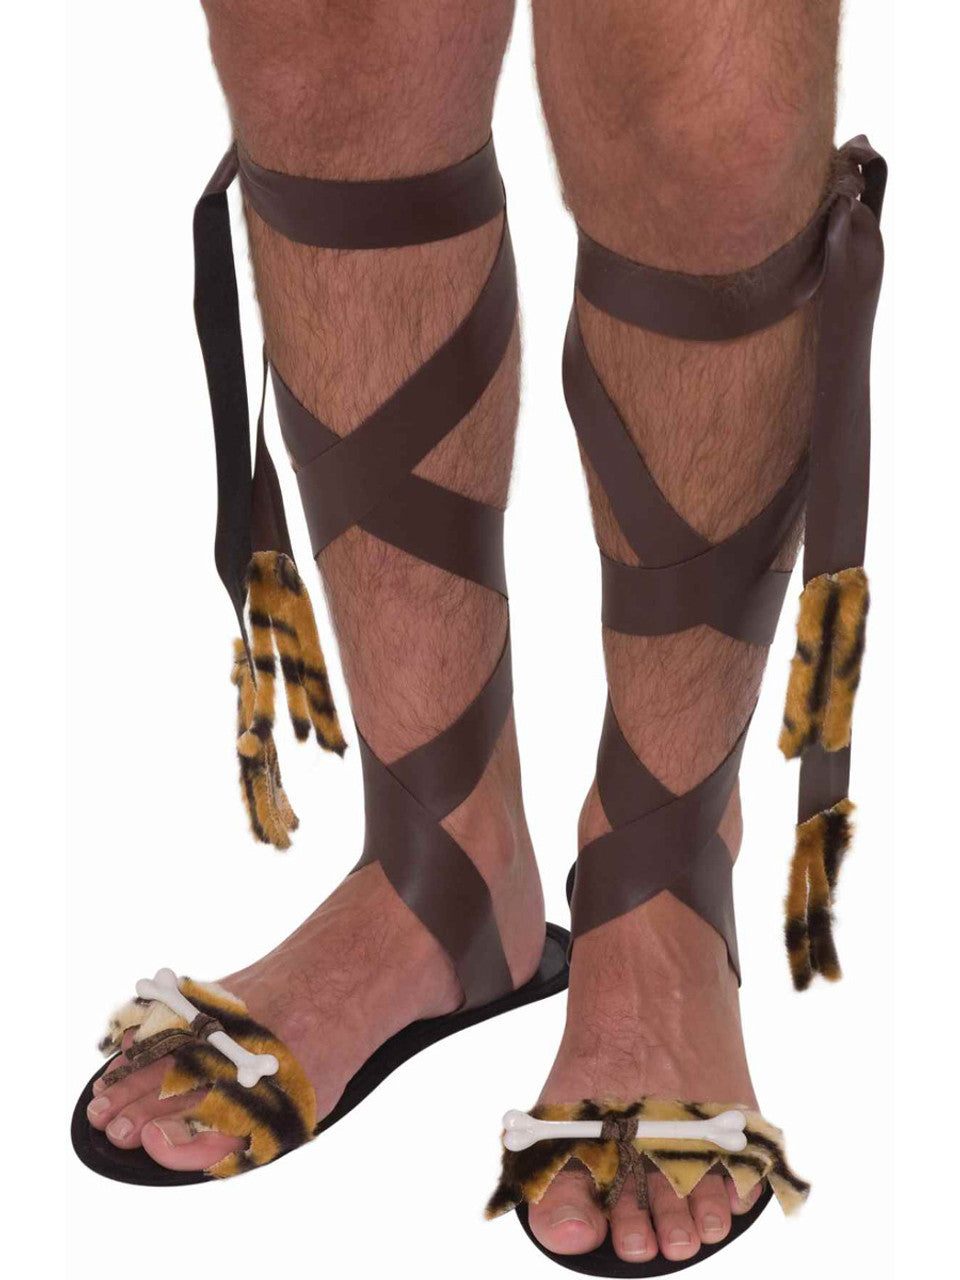 Caveman Sandals